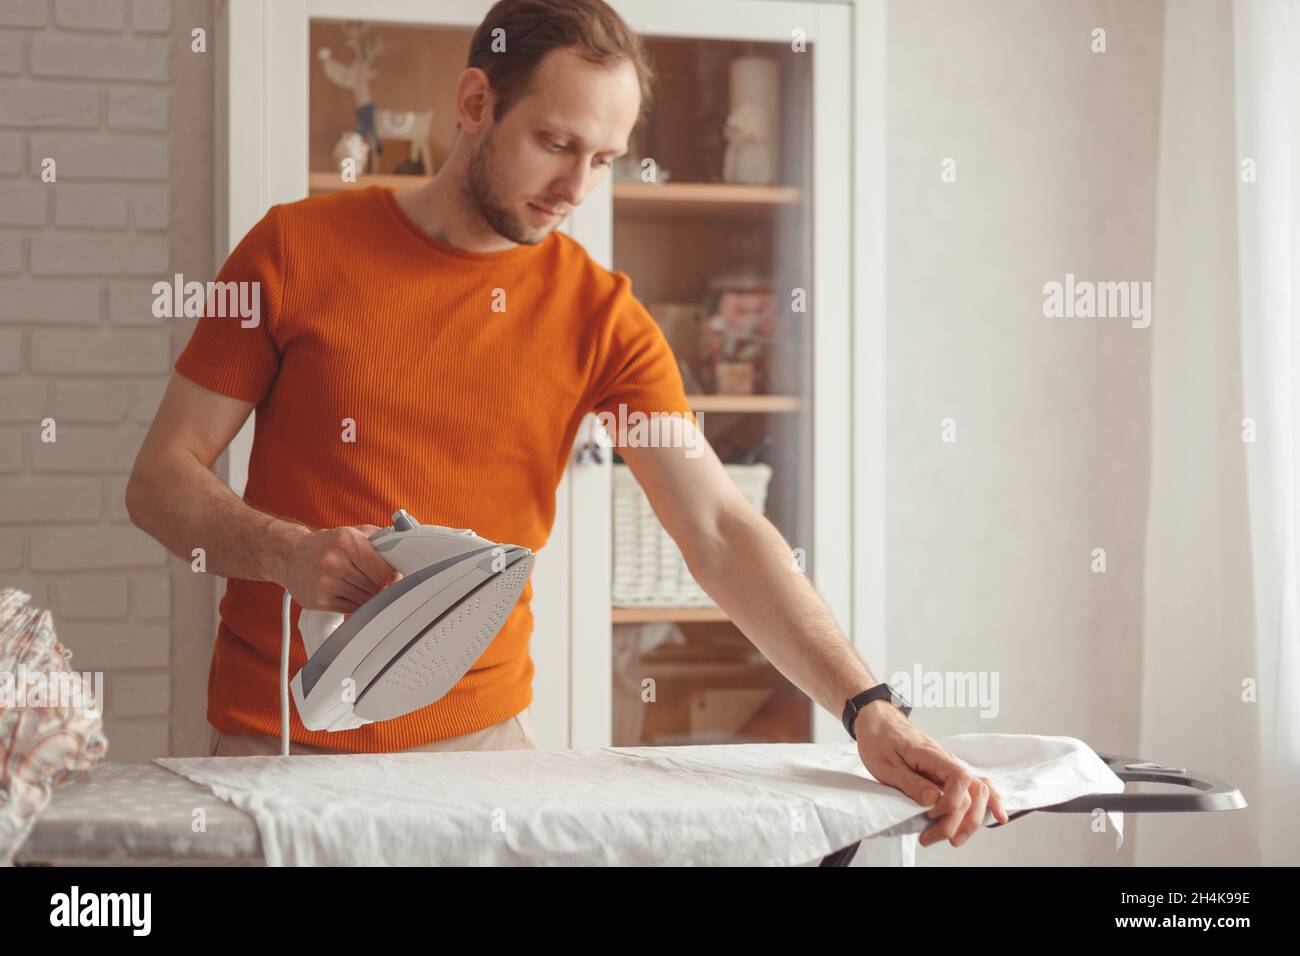 Der junge Kaukasusmann bügelt zu Hause das Kindertuch auf dem Bügelbrett. Männer, die Hausarbeiten erledigen. Stockfoto